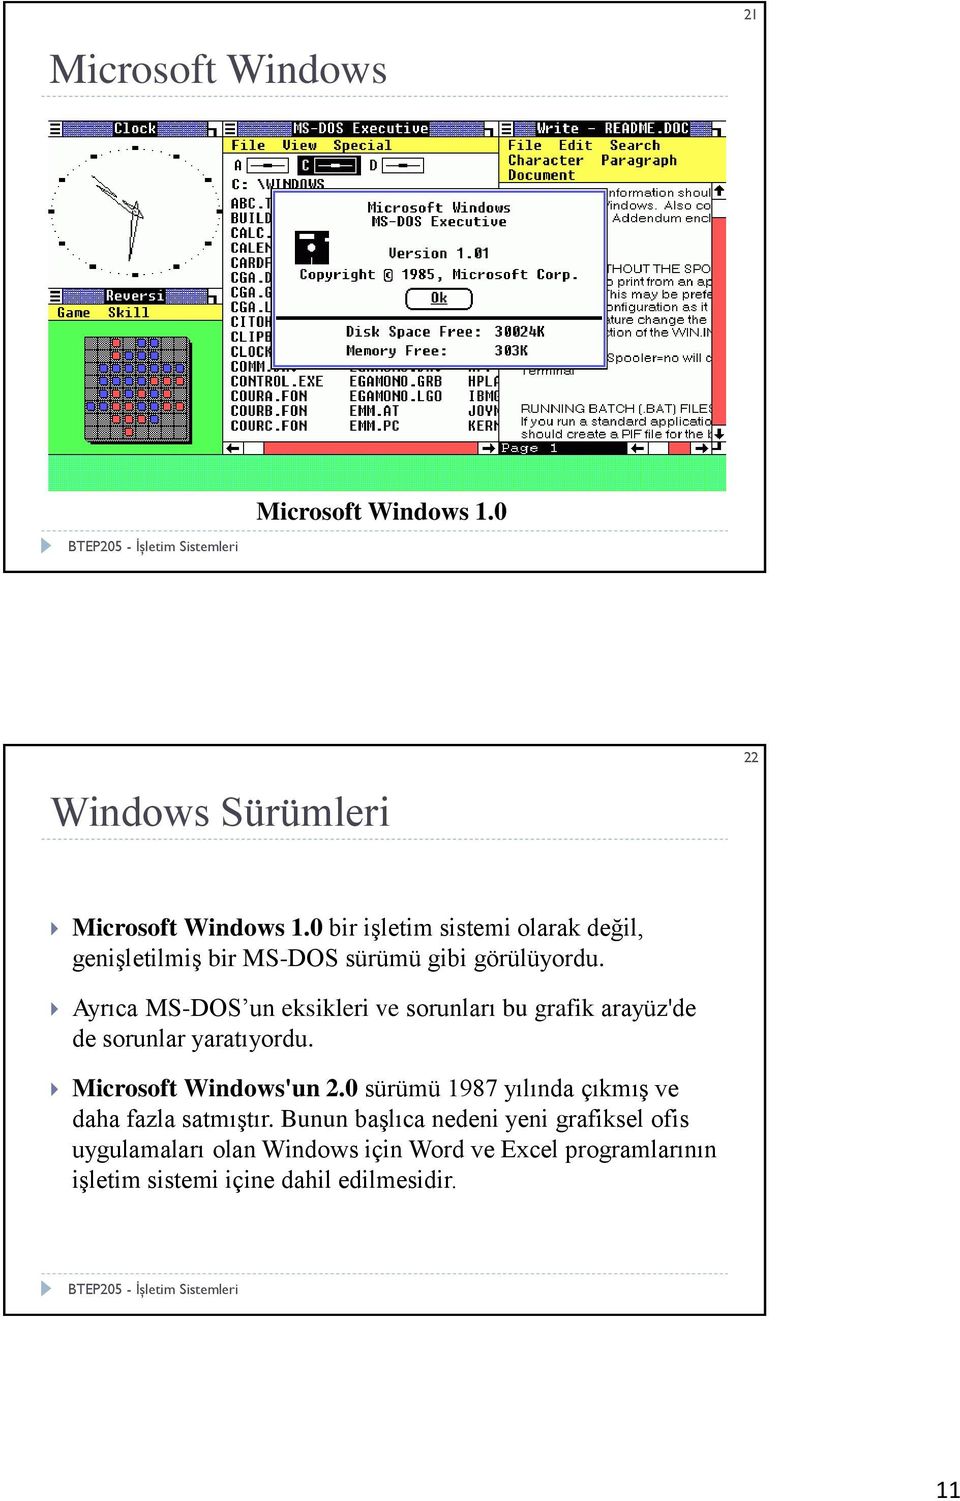 Ayrıca MS-DOS un eksikleri ve sorunları bu grafik arayüz'de de sorunlar yaratıyordu. Microsoft Windows'un 2.